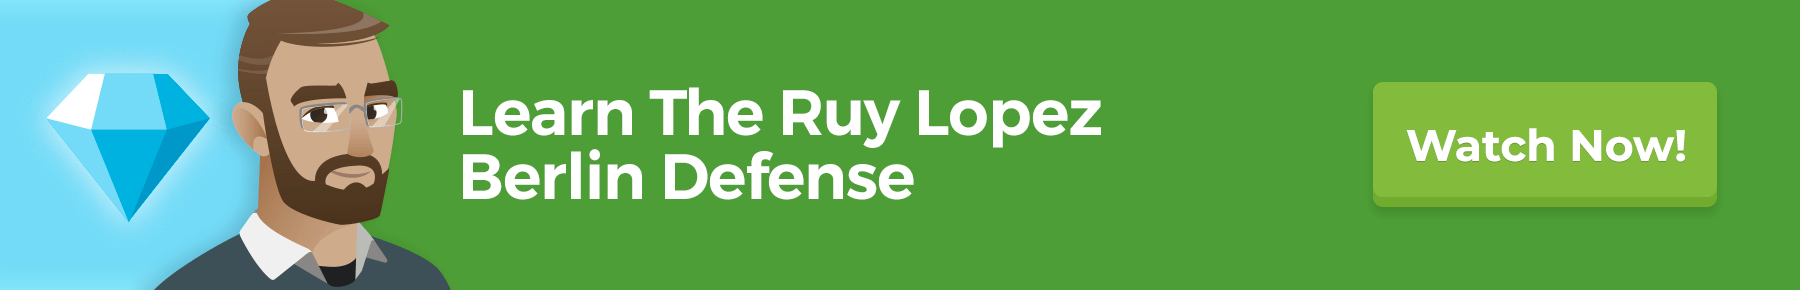 Learn The Ruy Lopez Berlin Defense